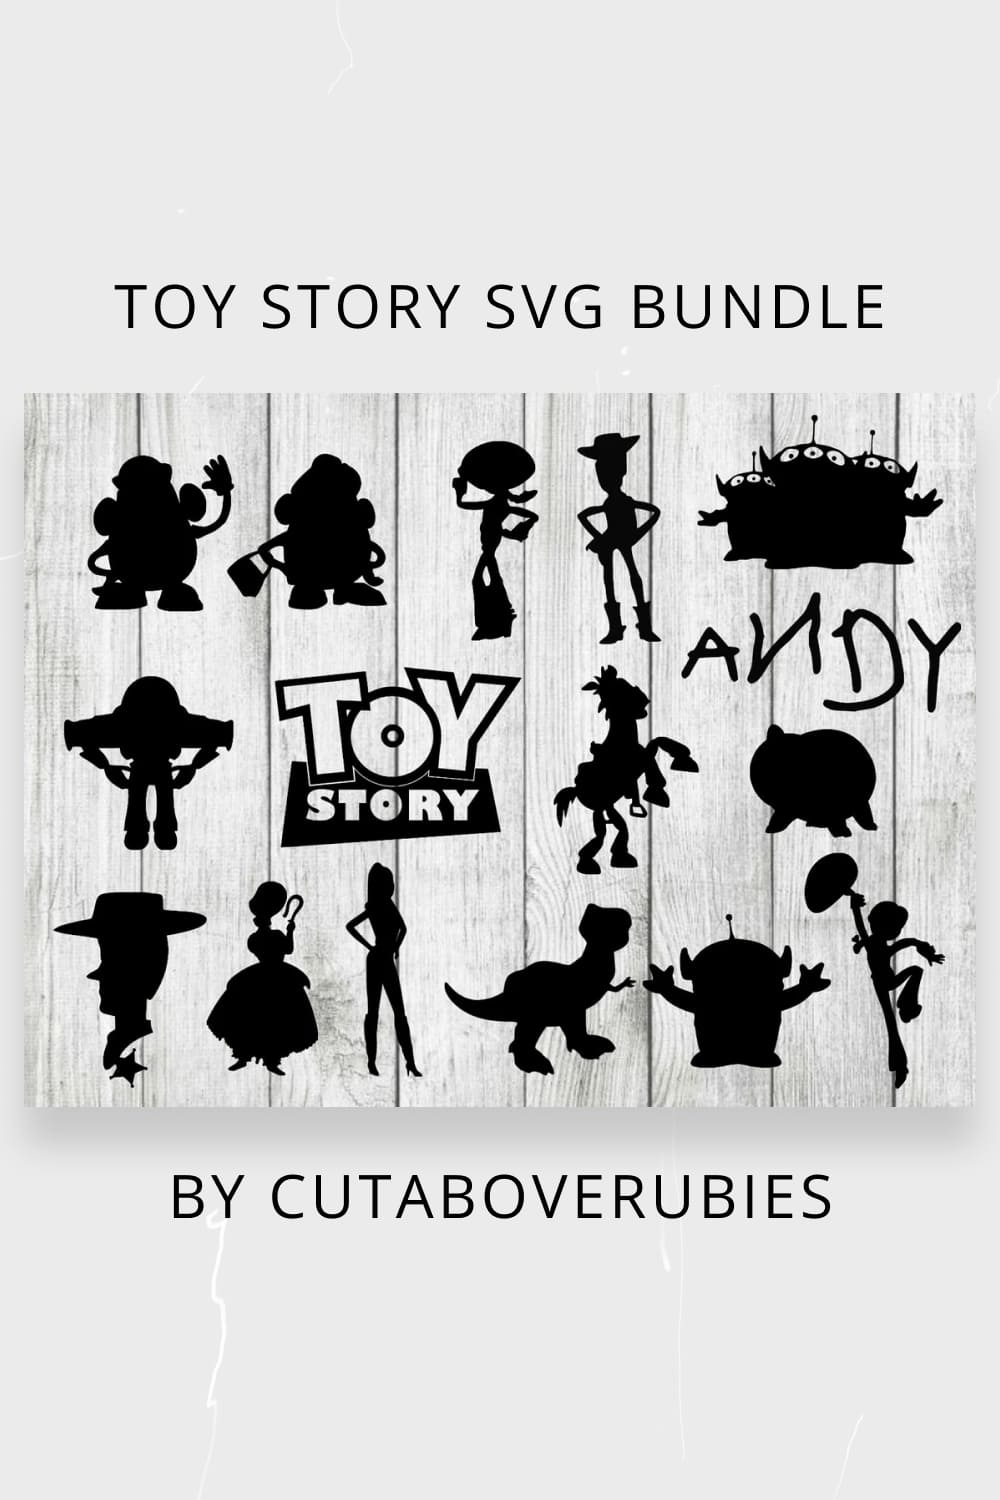 Toy story svg bundle pinterest.